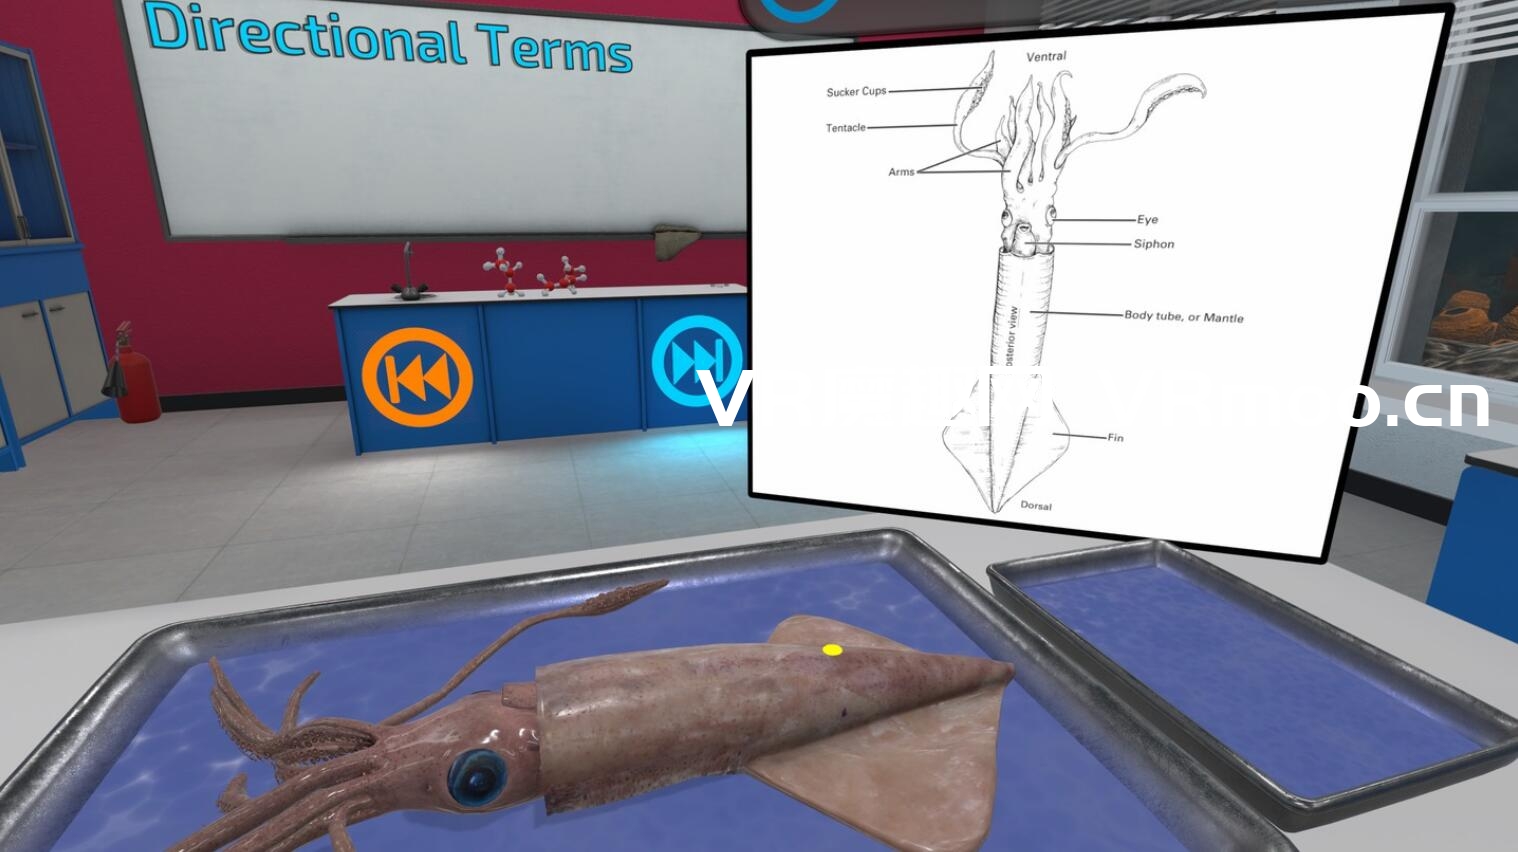 Oculus Quest 游戏《解剖模拟器 无脊椎动物》Dissection Simulator: Invertebrate Edition